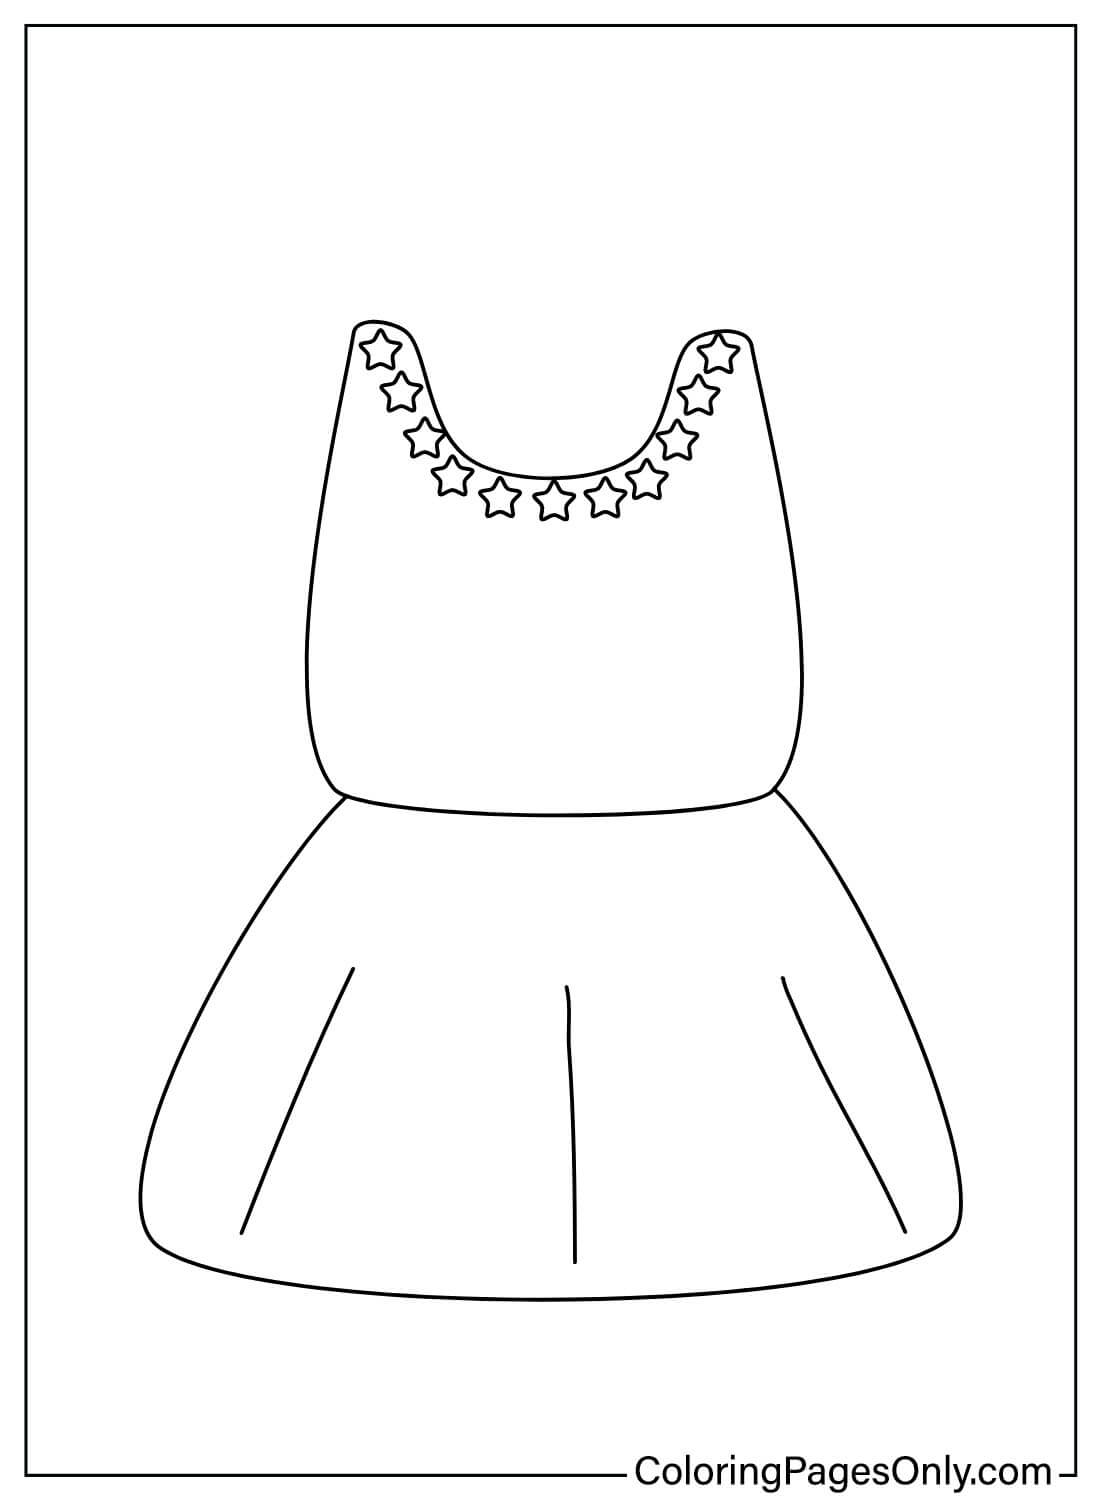 تلوين صفحة فستان طفل للطباعة من فستان طفل